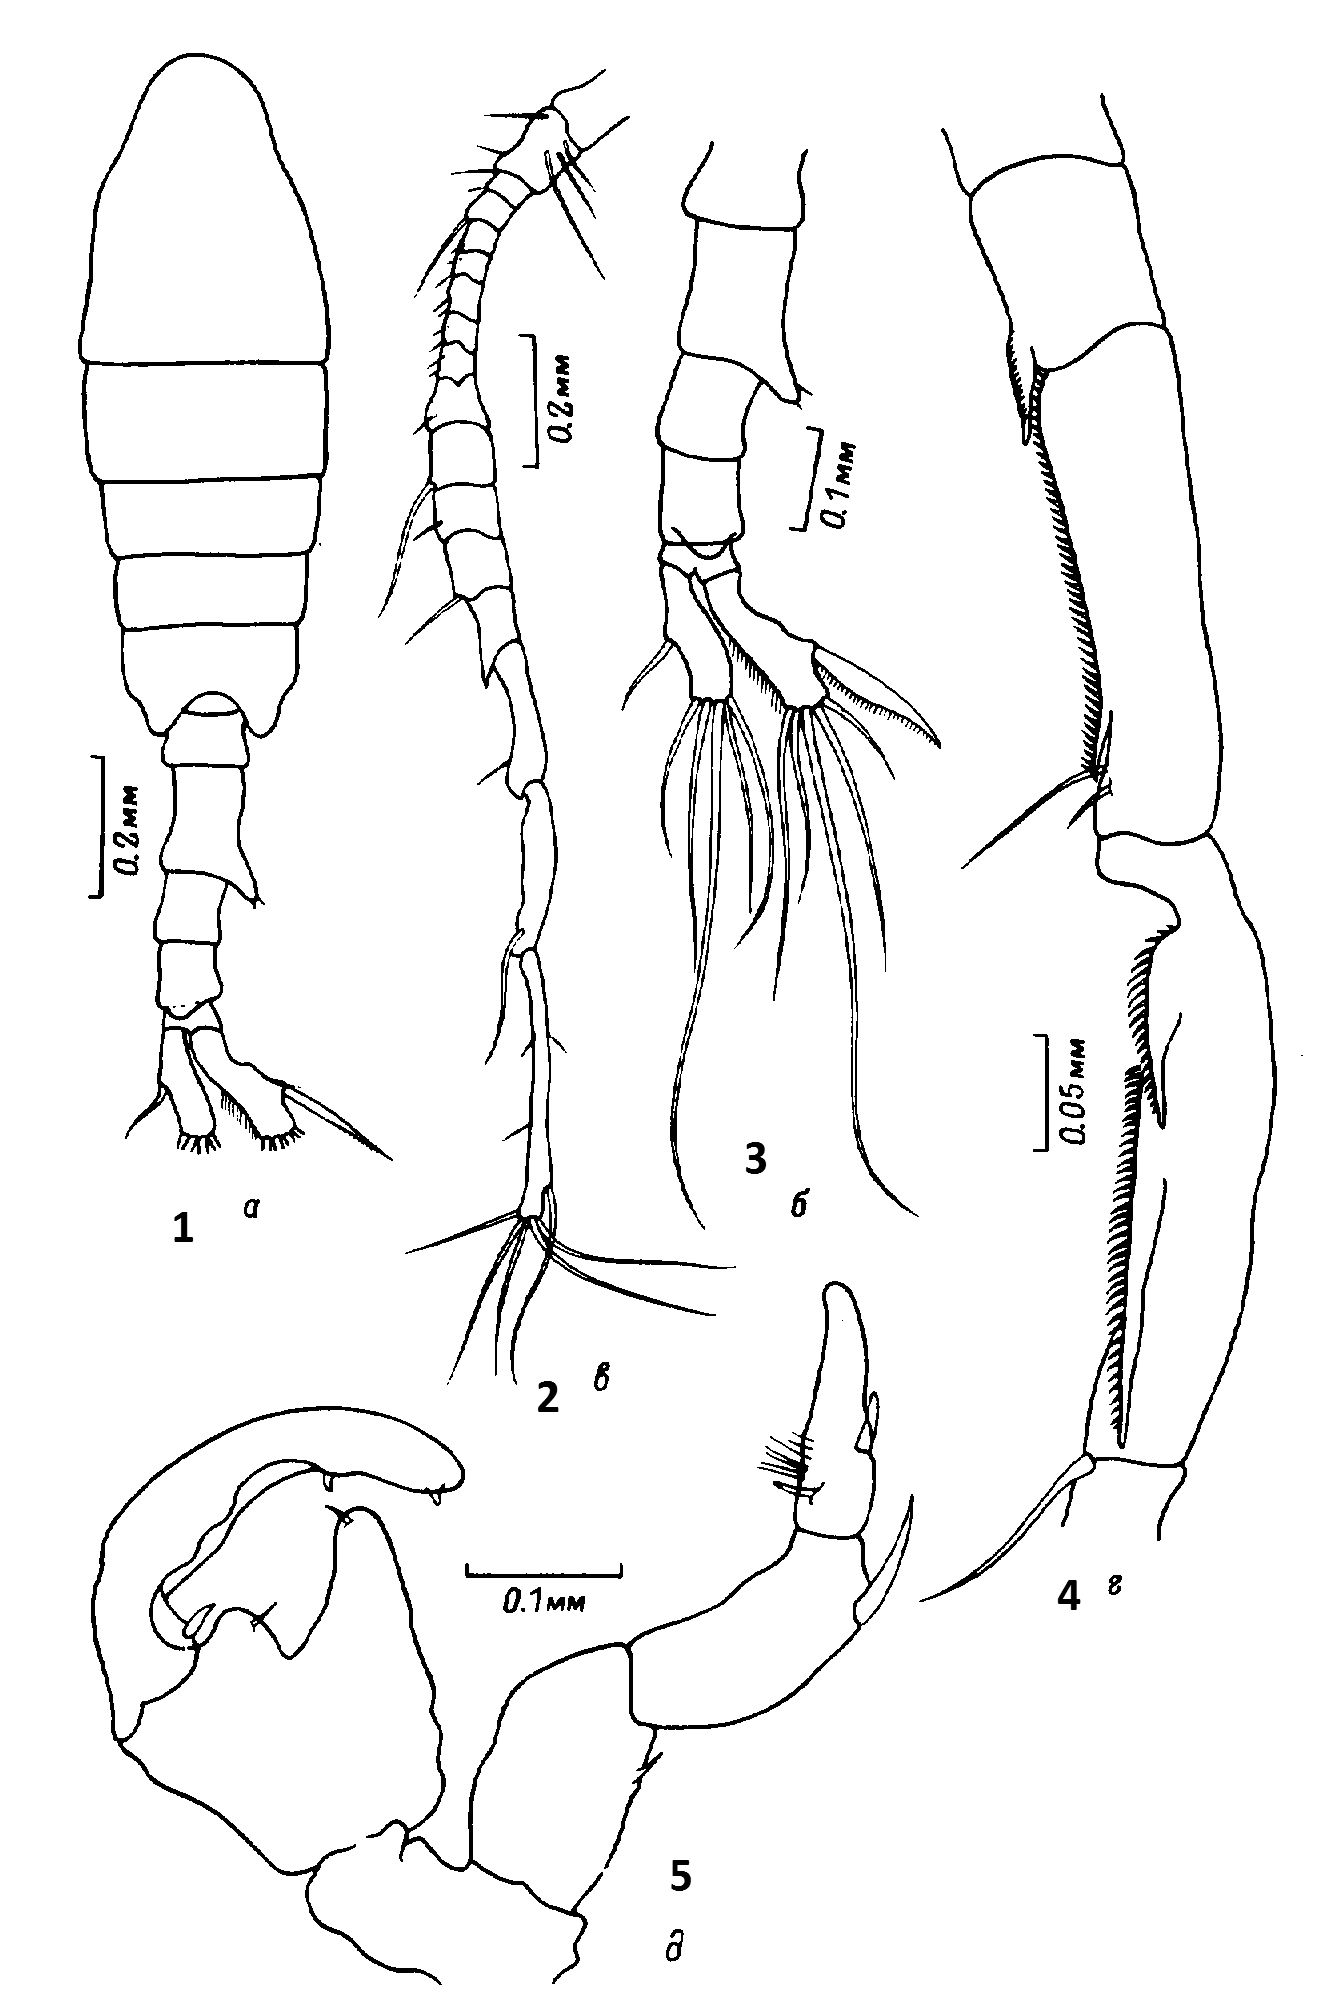 Species Tortanus (Boreotortanus) discaudatus - Plate 14 of morphological figures